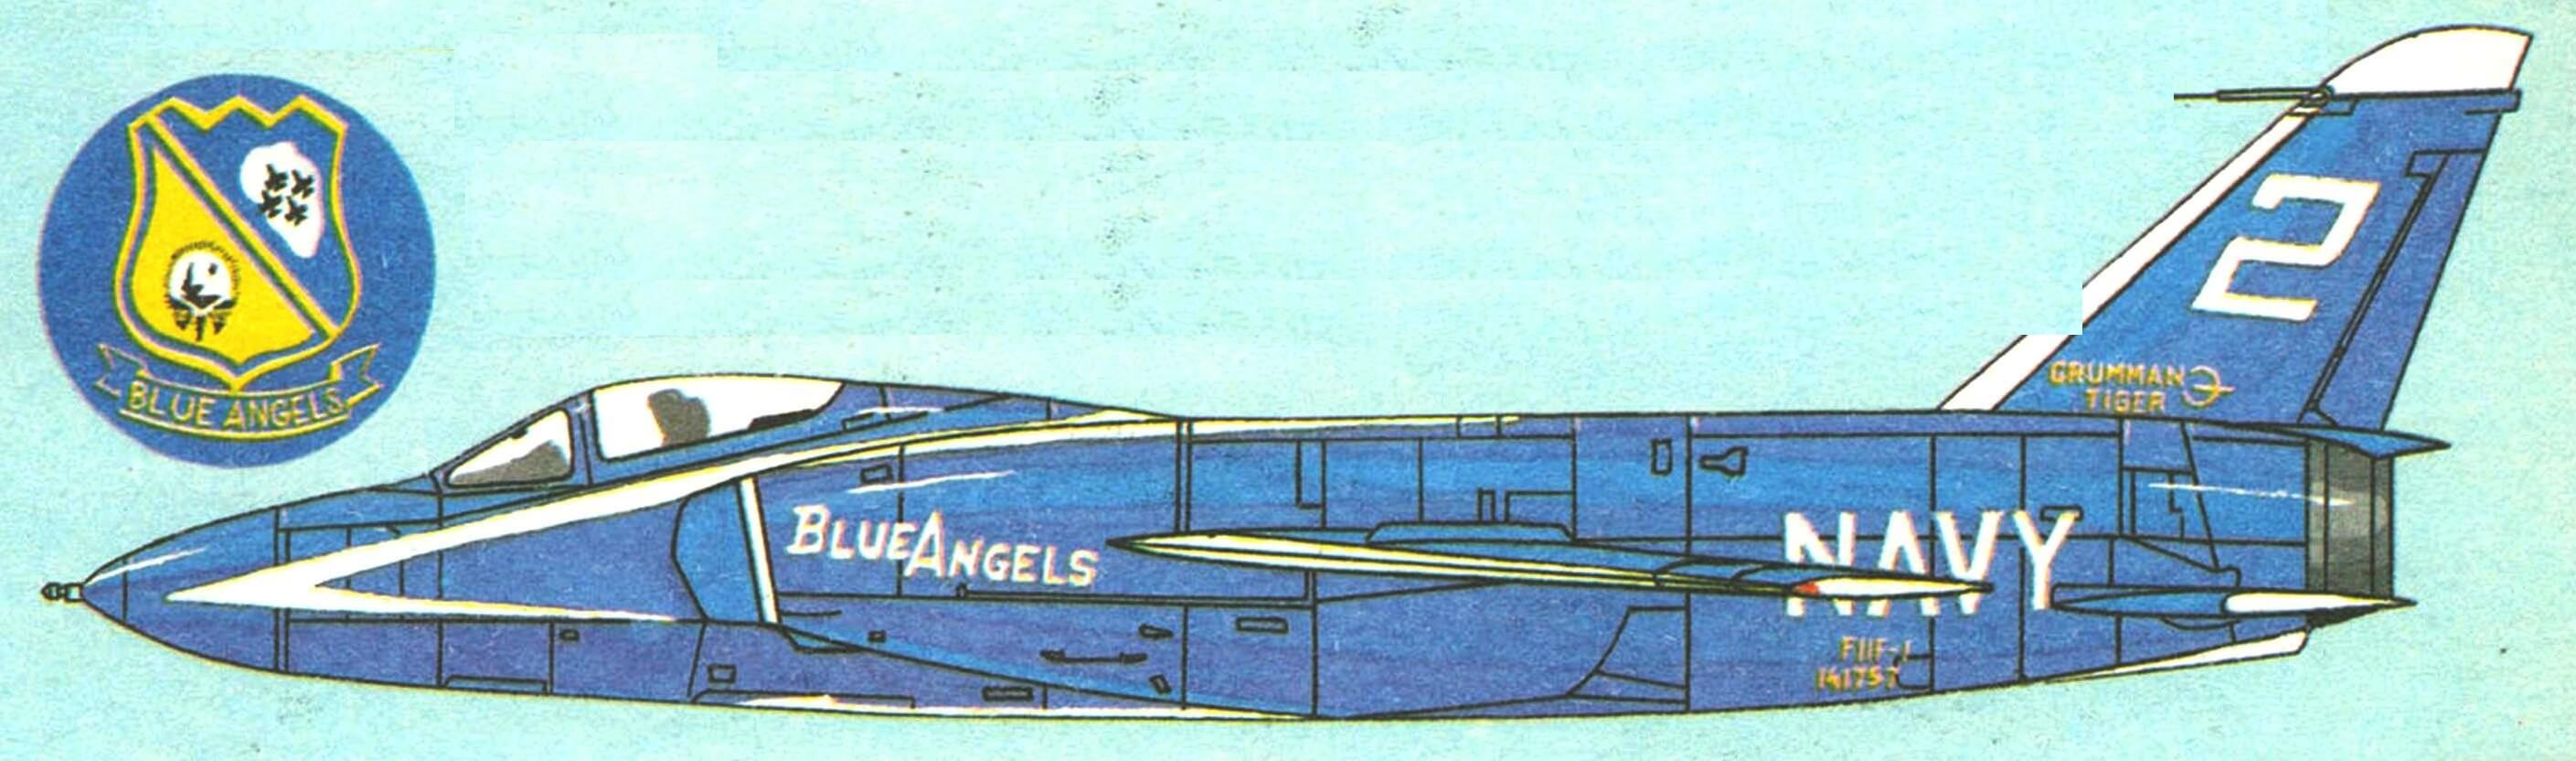 Самолет демонстрационной эскадрильи «Blue Angels», 1957 г.